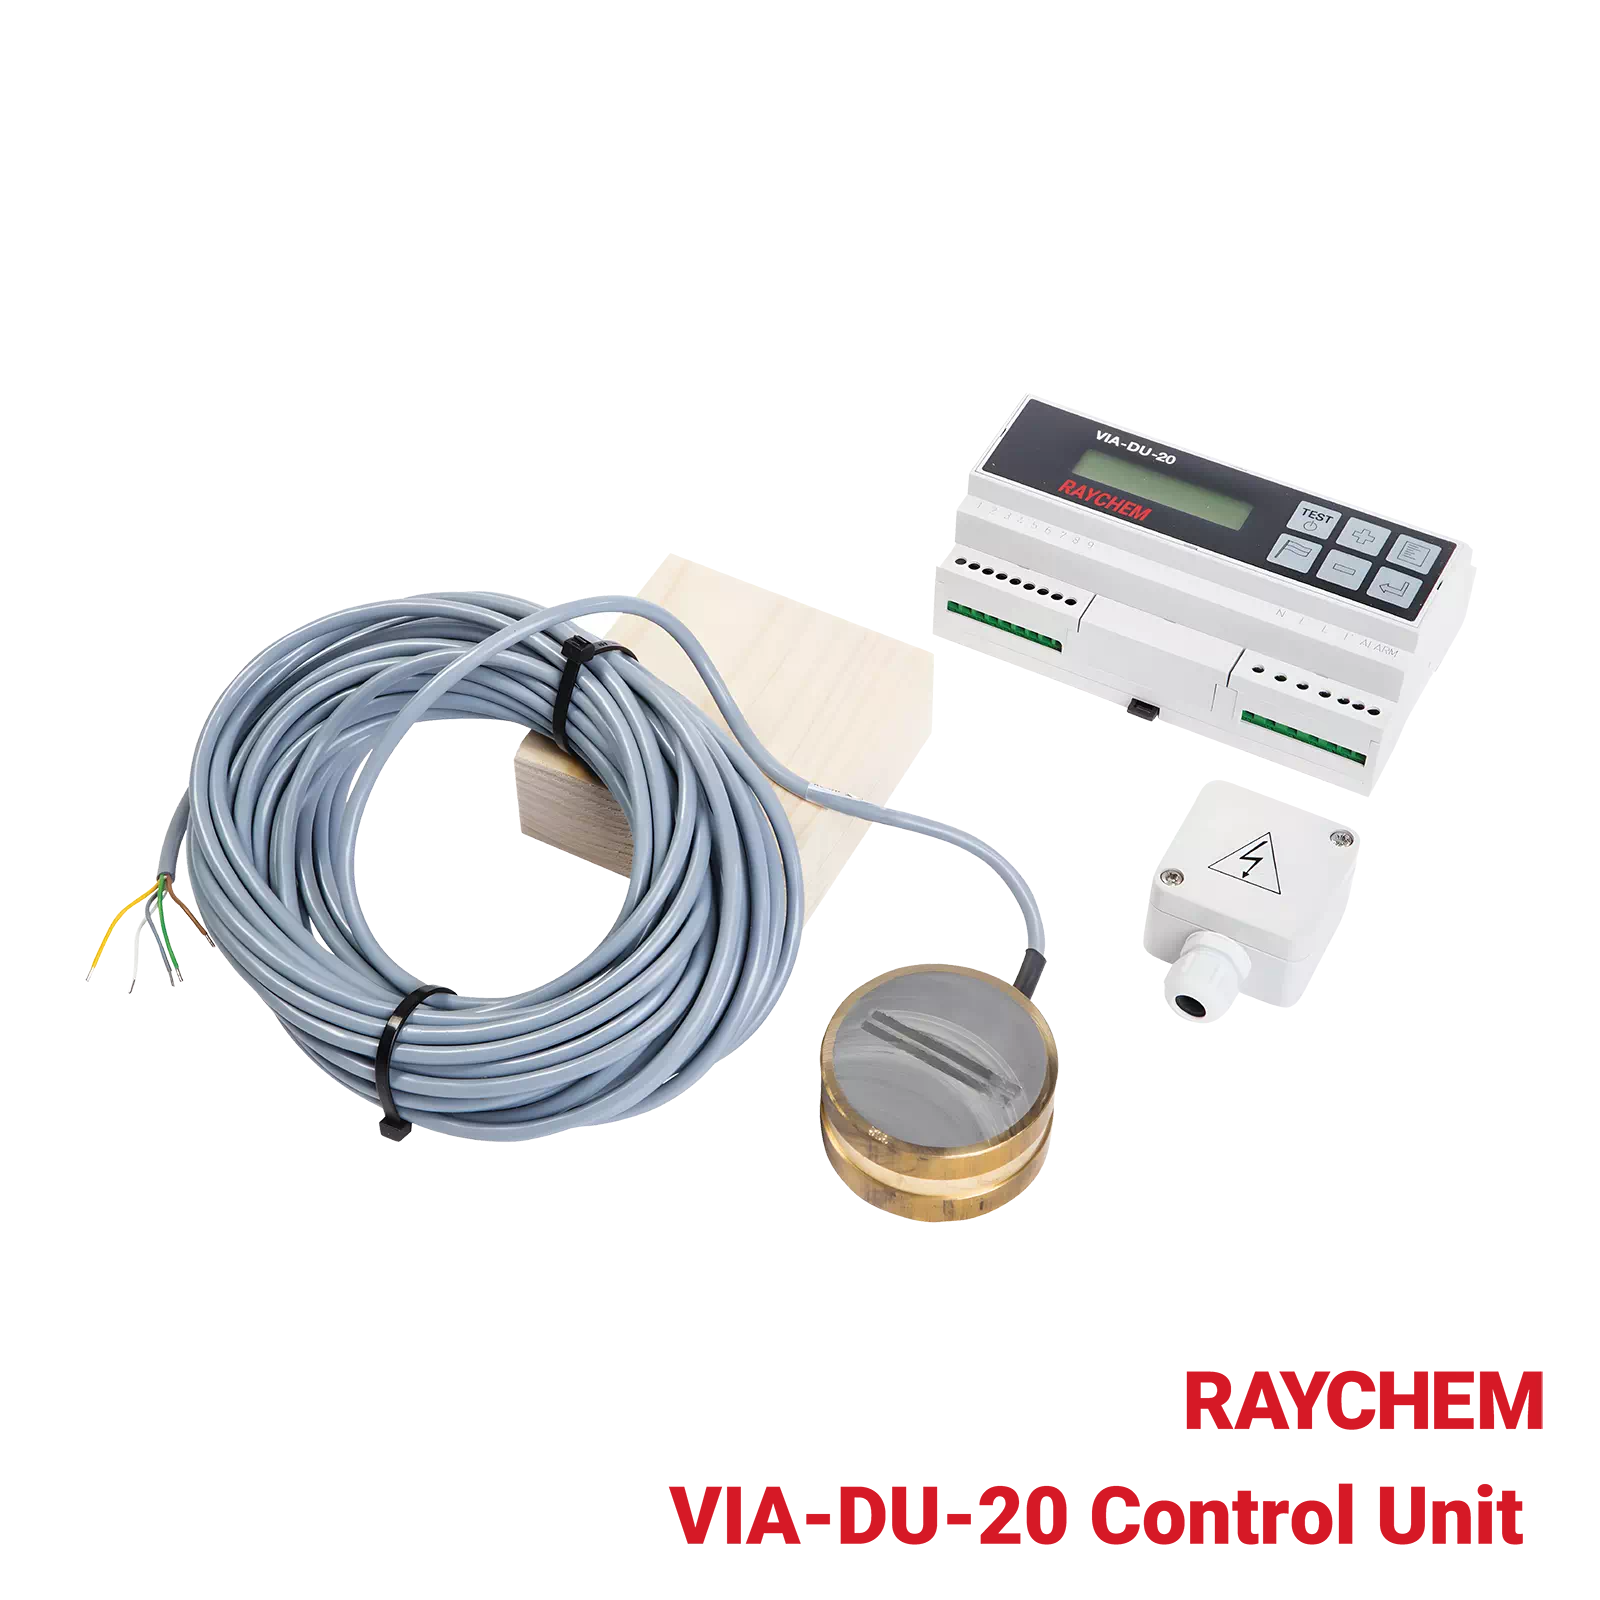 VIA-DU-20-Control-Unit-Raychem-Industrial-Heating